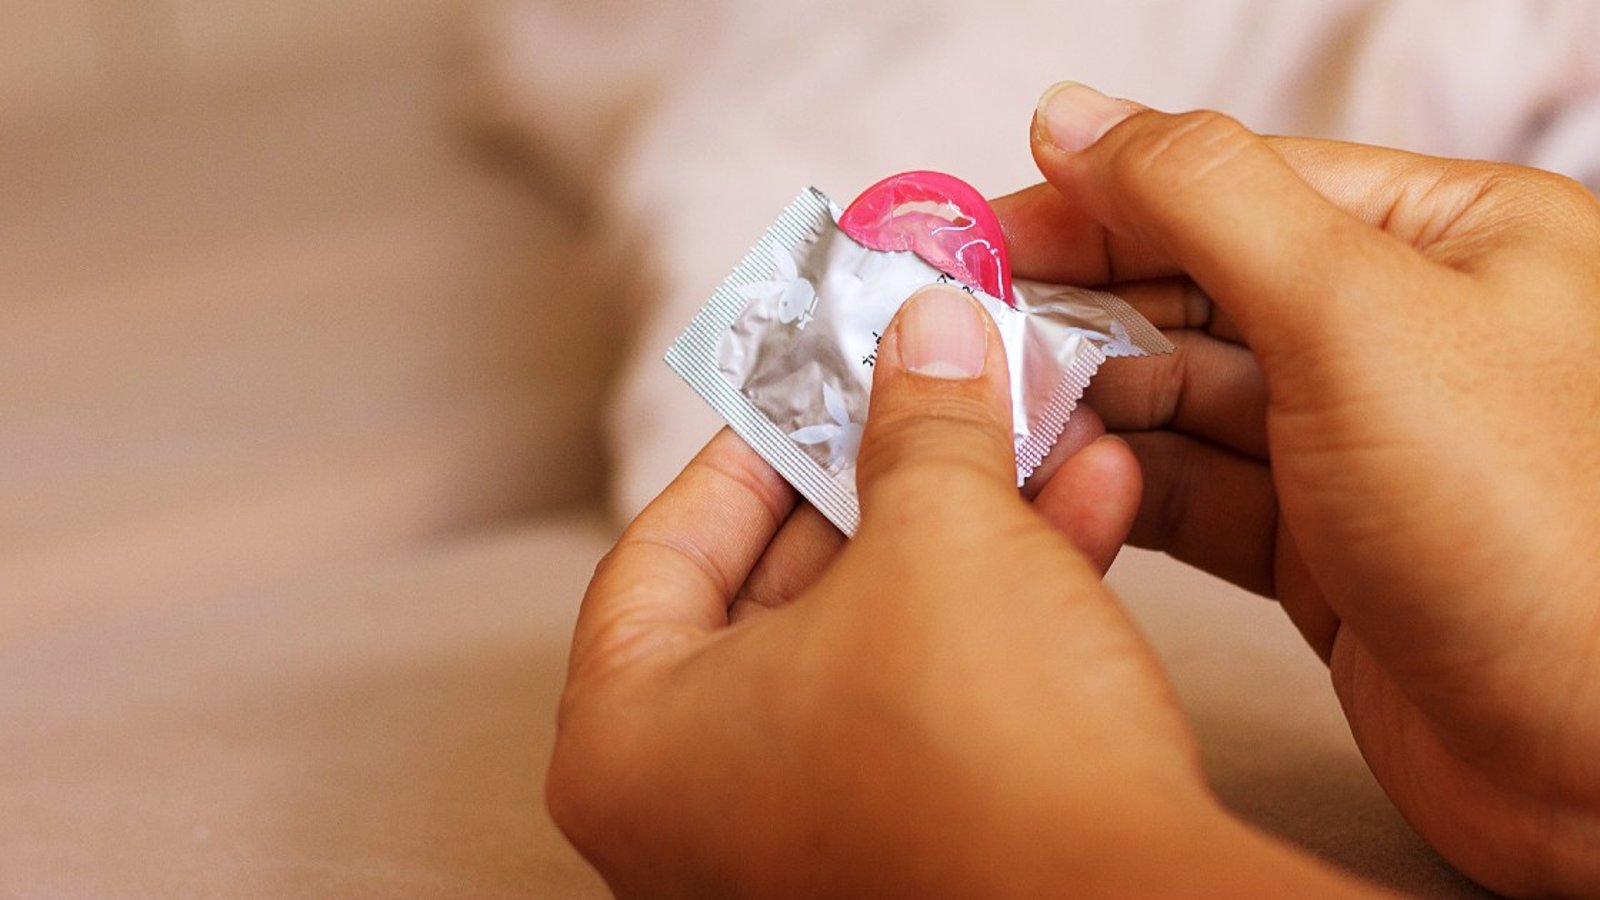 Une femme condamnée à 6 mois de prison parce qu'elle a percé les préservatifs de son amant